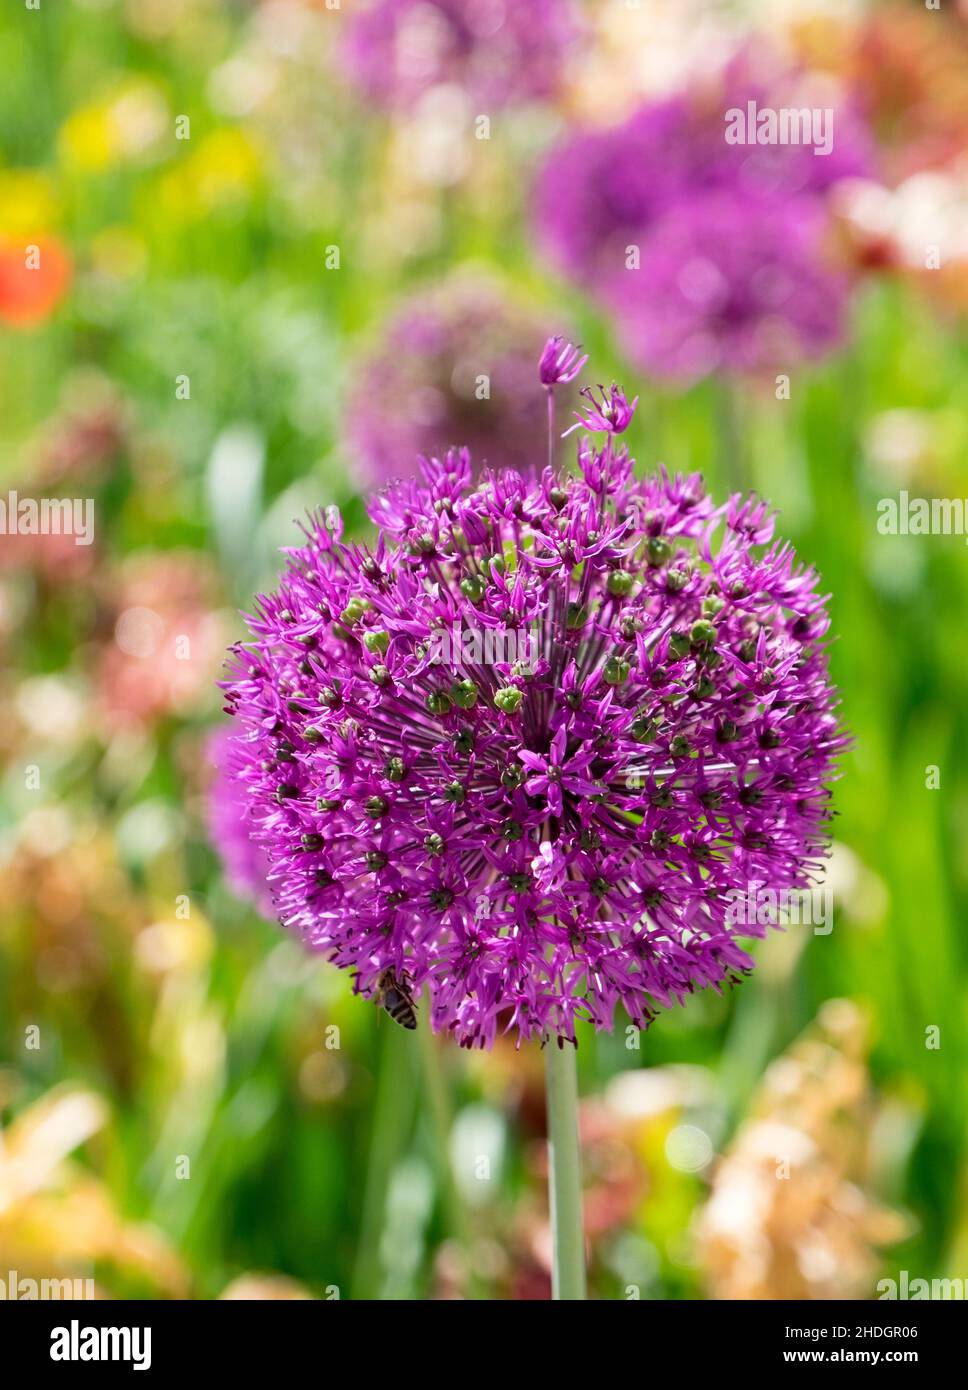 allium, allium flower, alliums, allium flowers Stock Photo